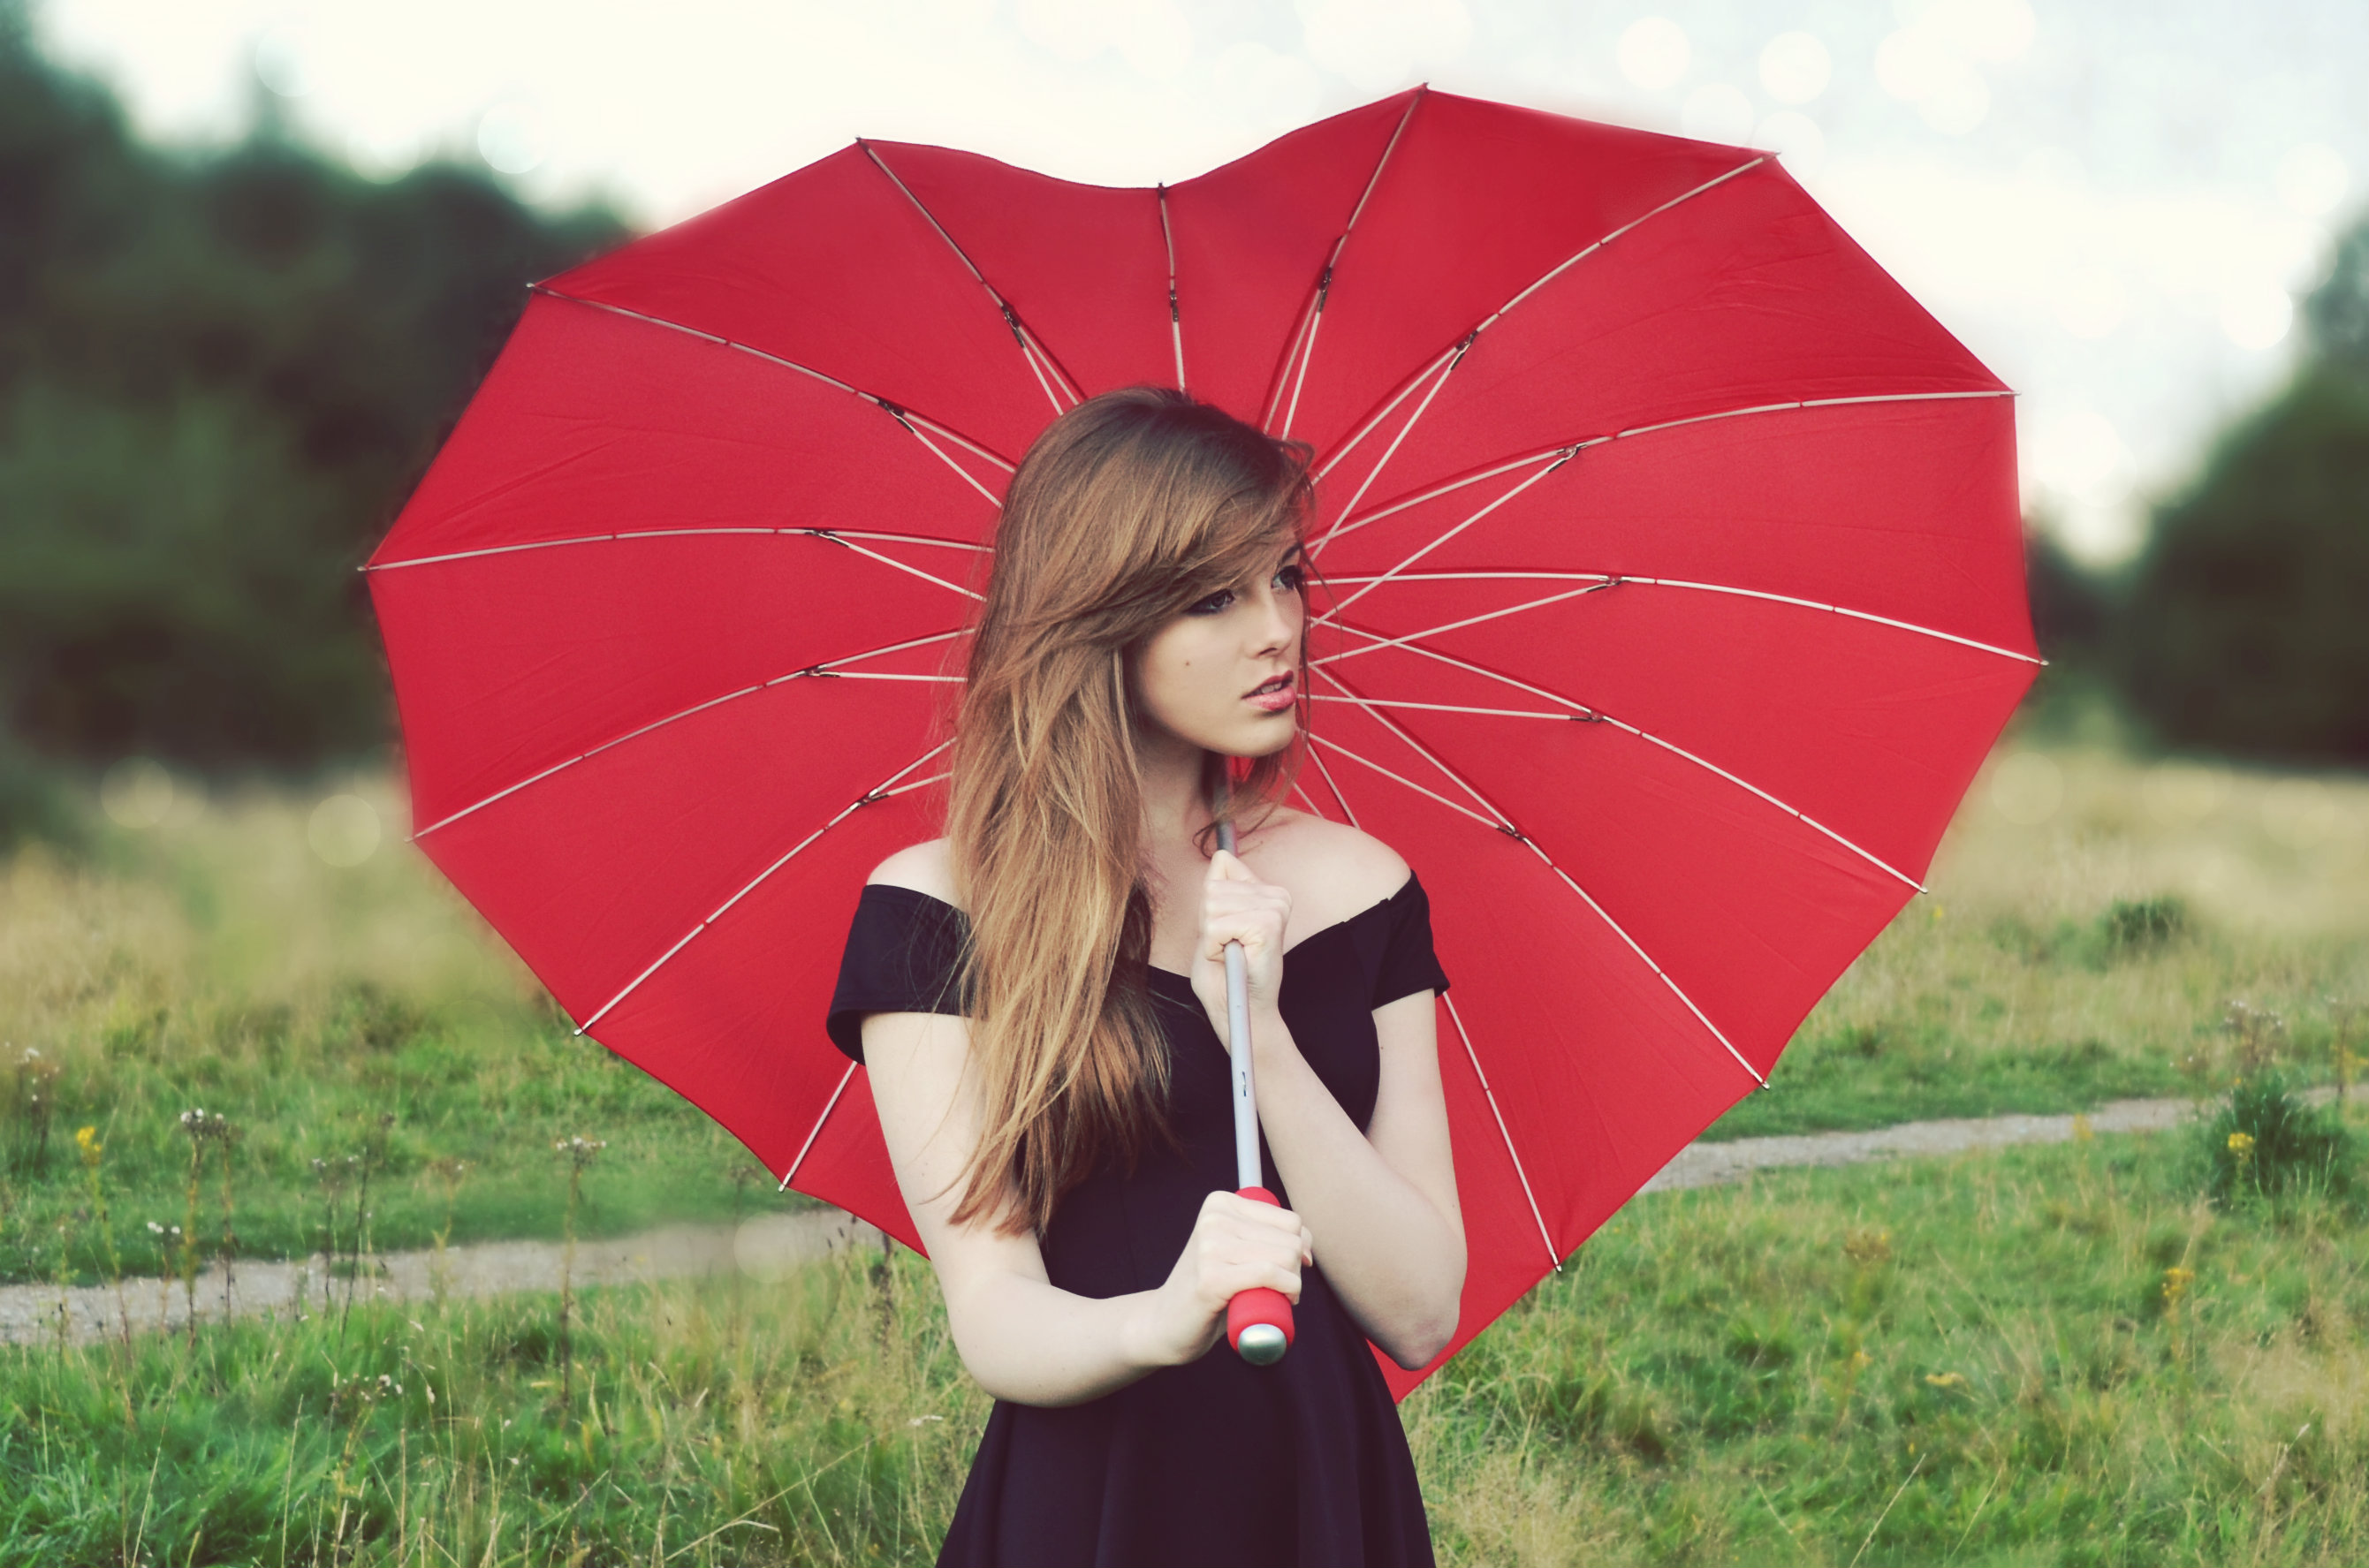 Umbrella dress. Девушка с зонтом. Девочка с зонтиком. Красивая девушка с зонтом. Рыжая девушка с зонтом.